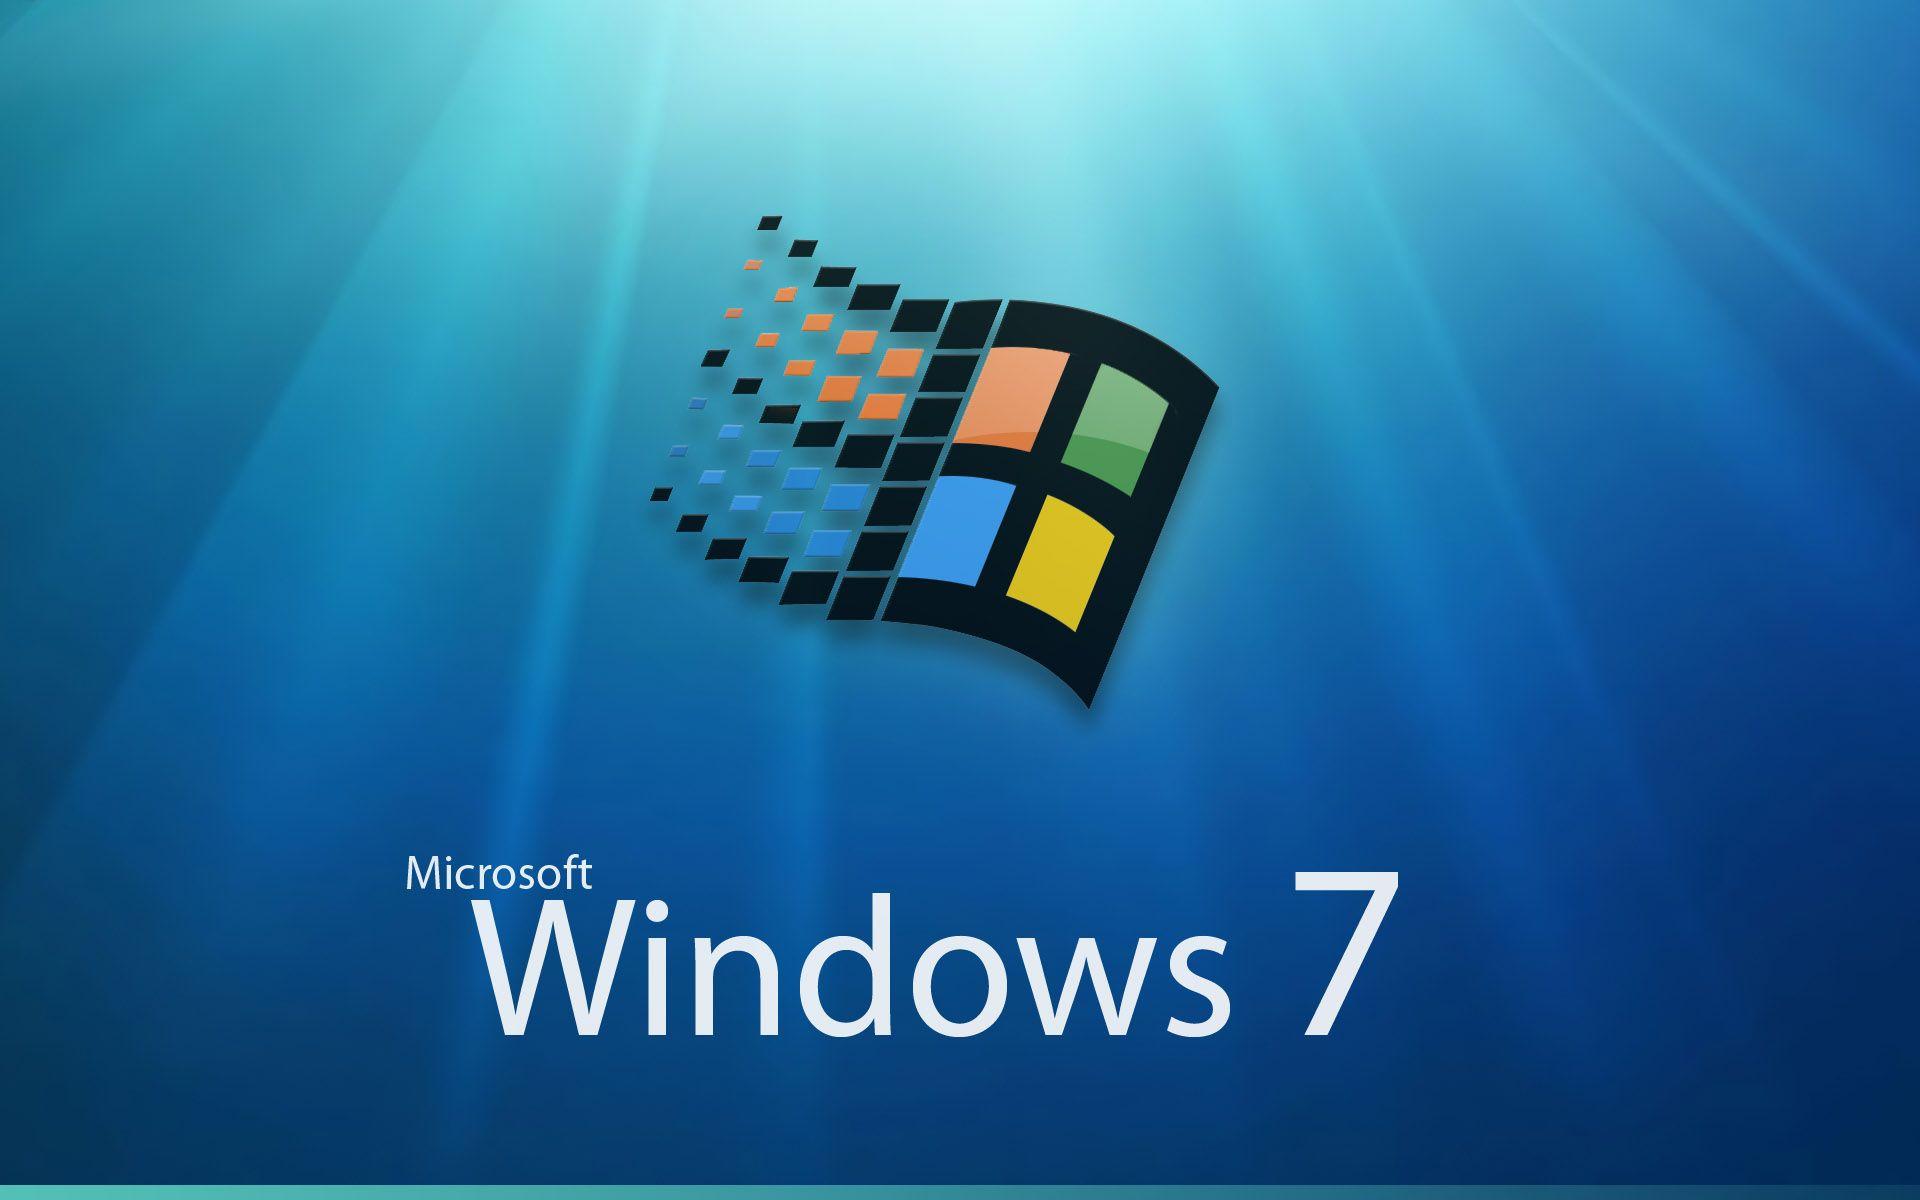 1920x1200 Hình nền và hình ảnh logo Microsoft Windows 7 - hình nền, hình ảnh, ảnh